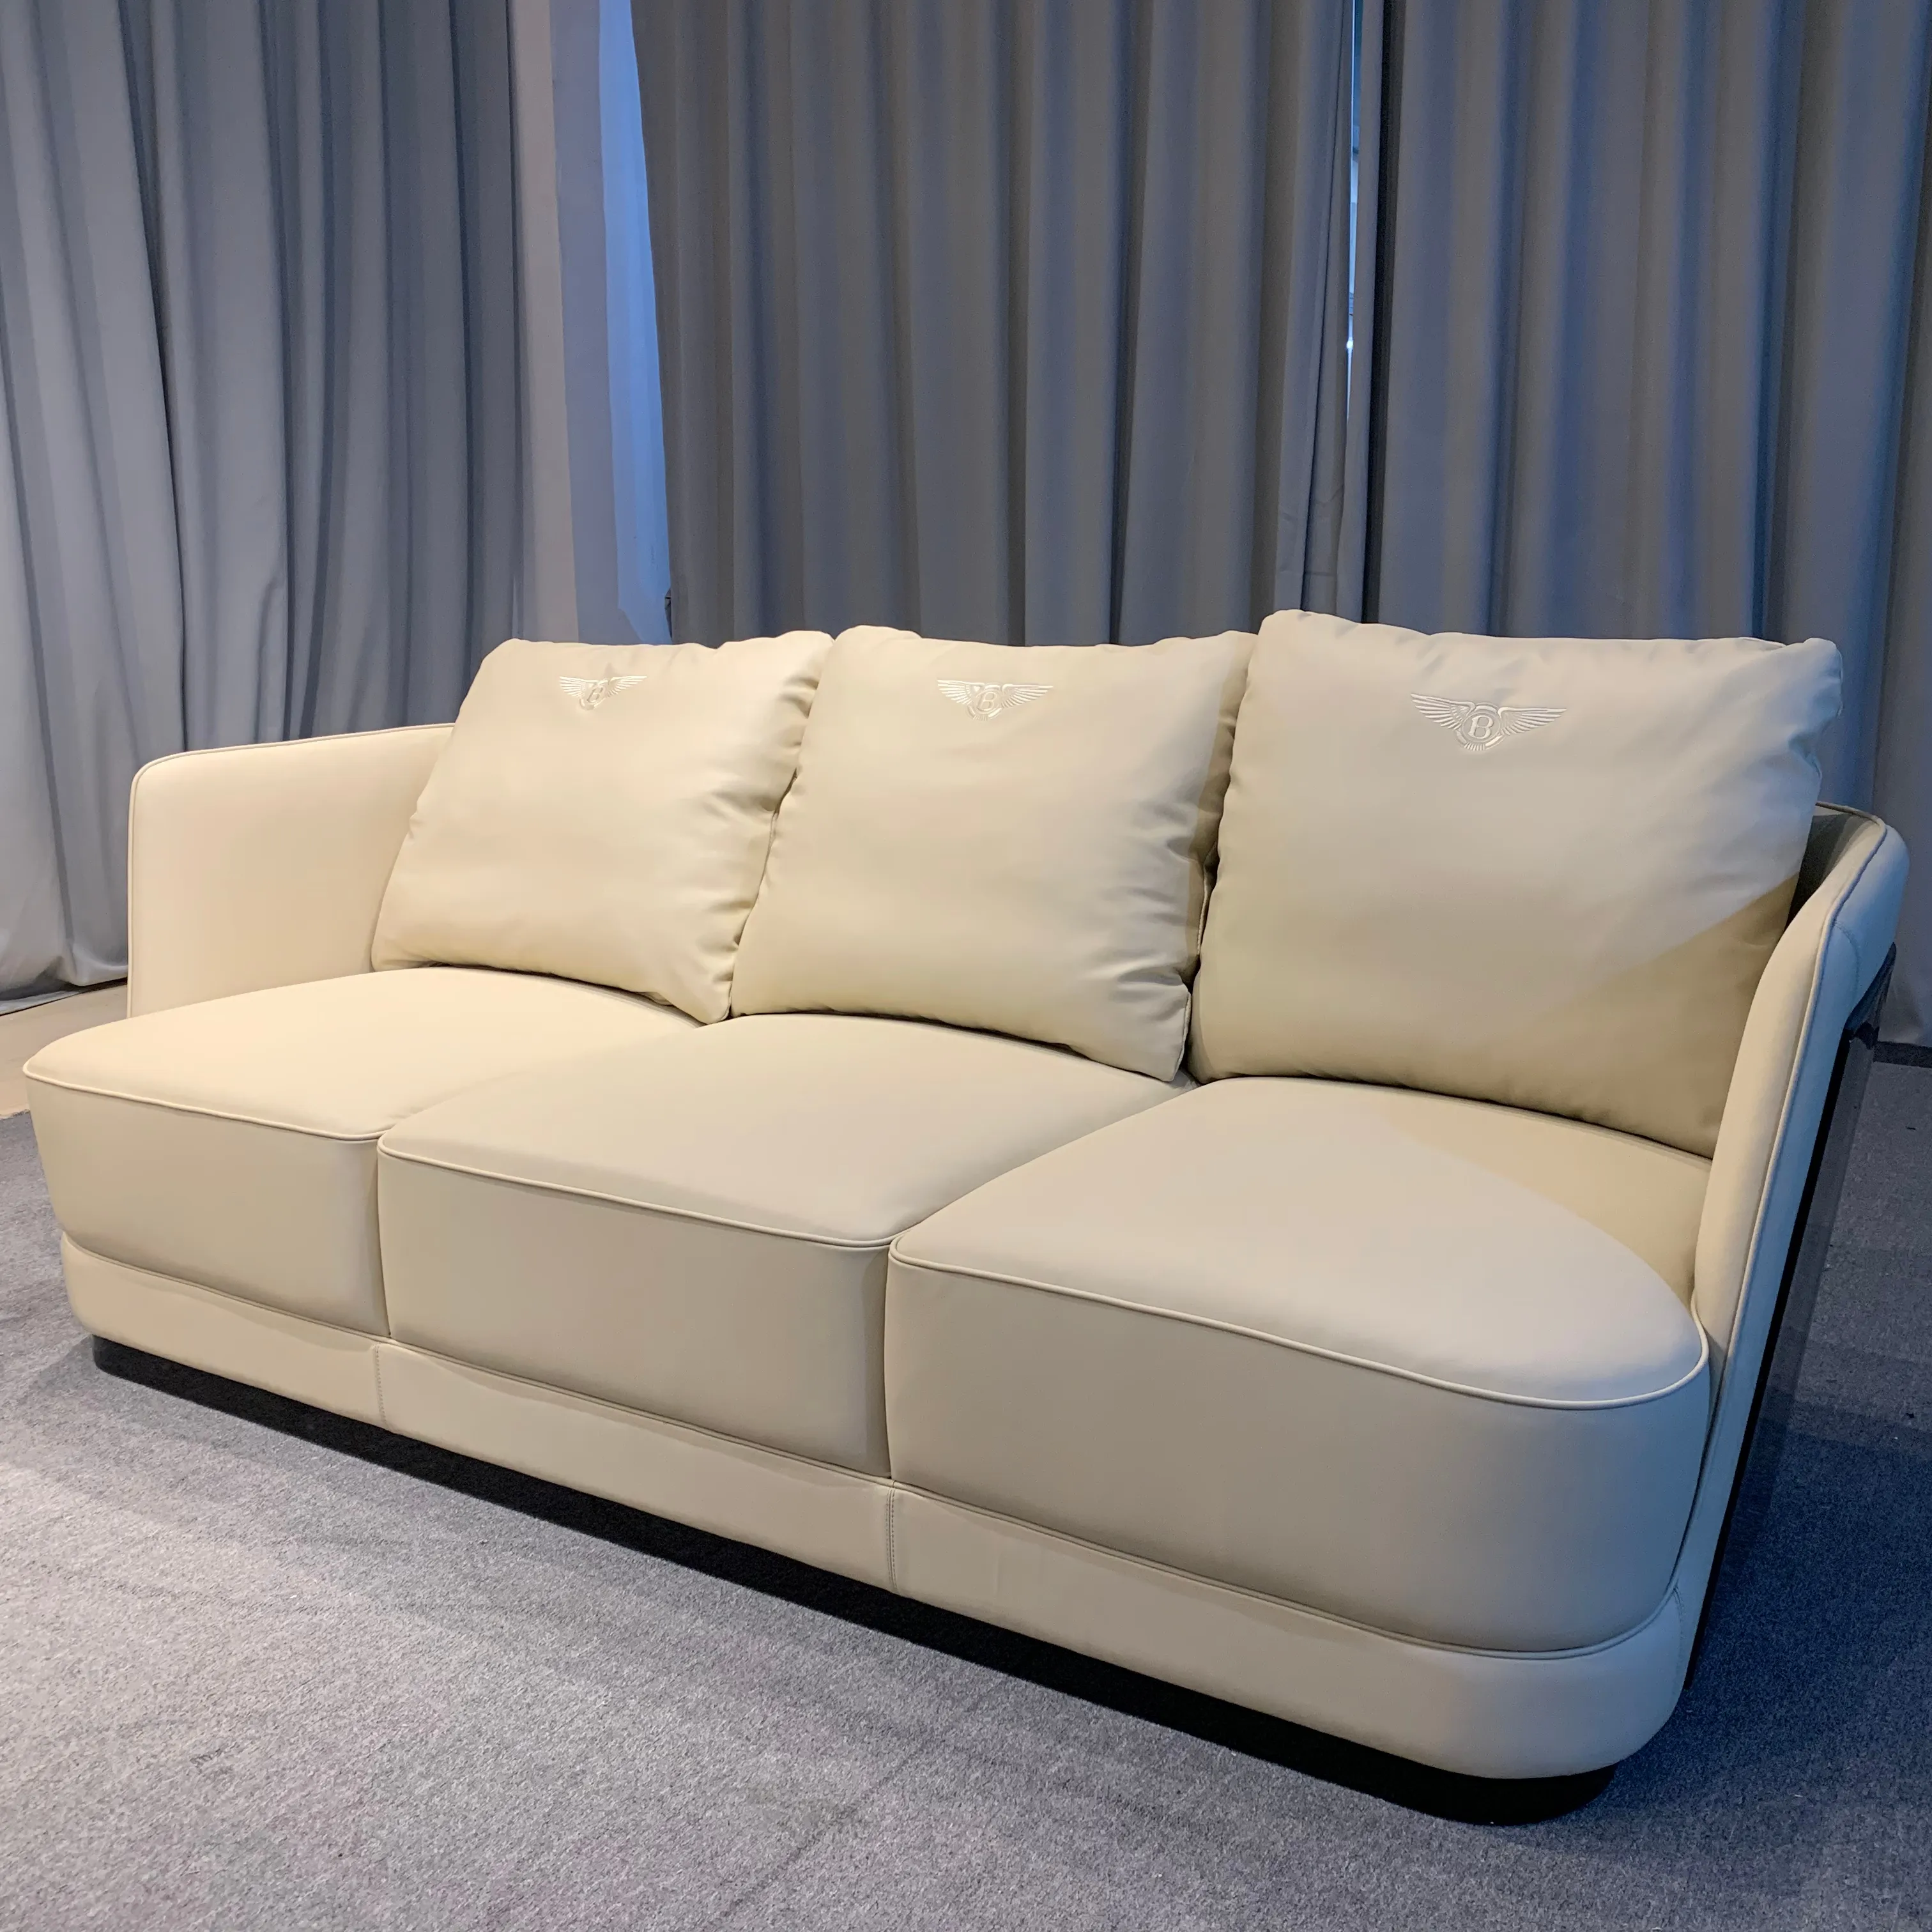 الأثاث قدم المصنع حار بيع ايطاليا تصميم النسيج أريكة لغرفة المعيشة